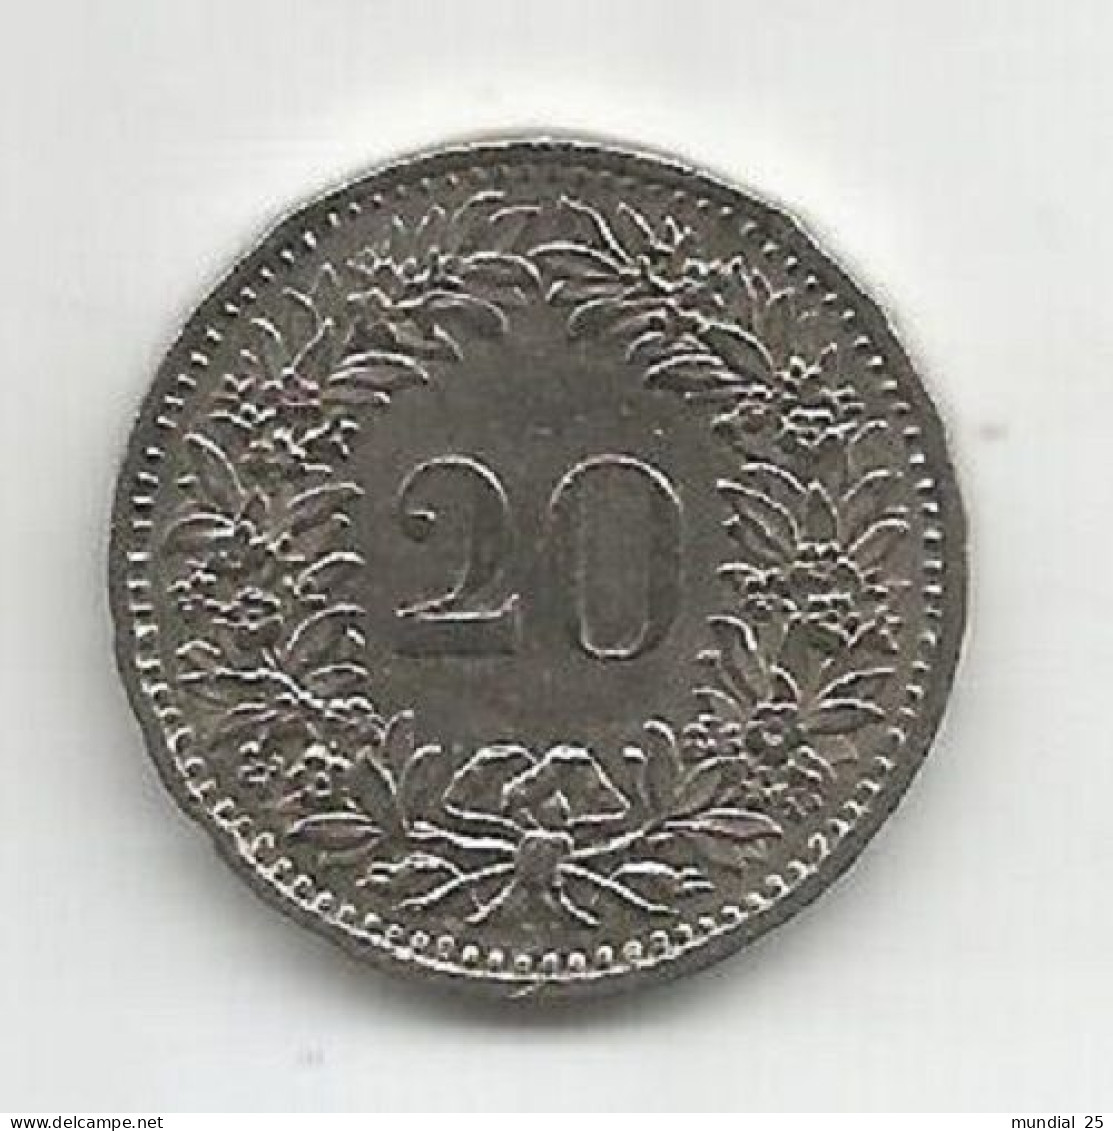 SWITZERLAND 20 RAPPEN 1974 - 20 Centimes / Rappen